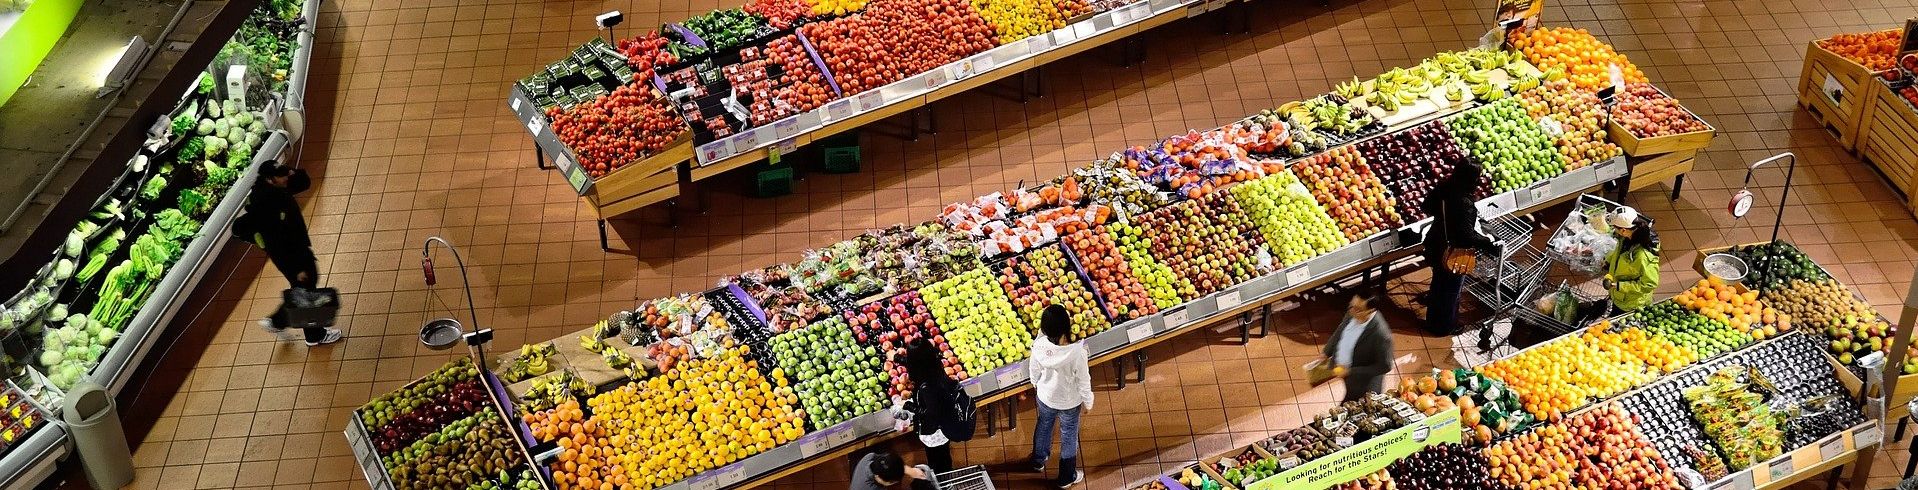 Blick auf Obst- udn GEmüsestand im Supermarkt von oben